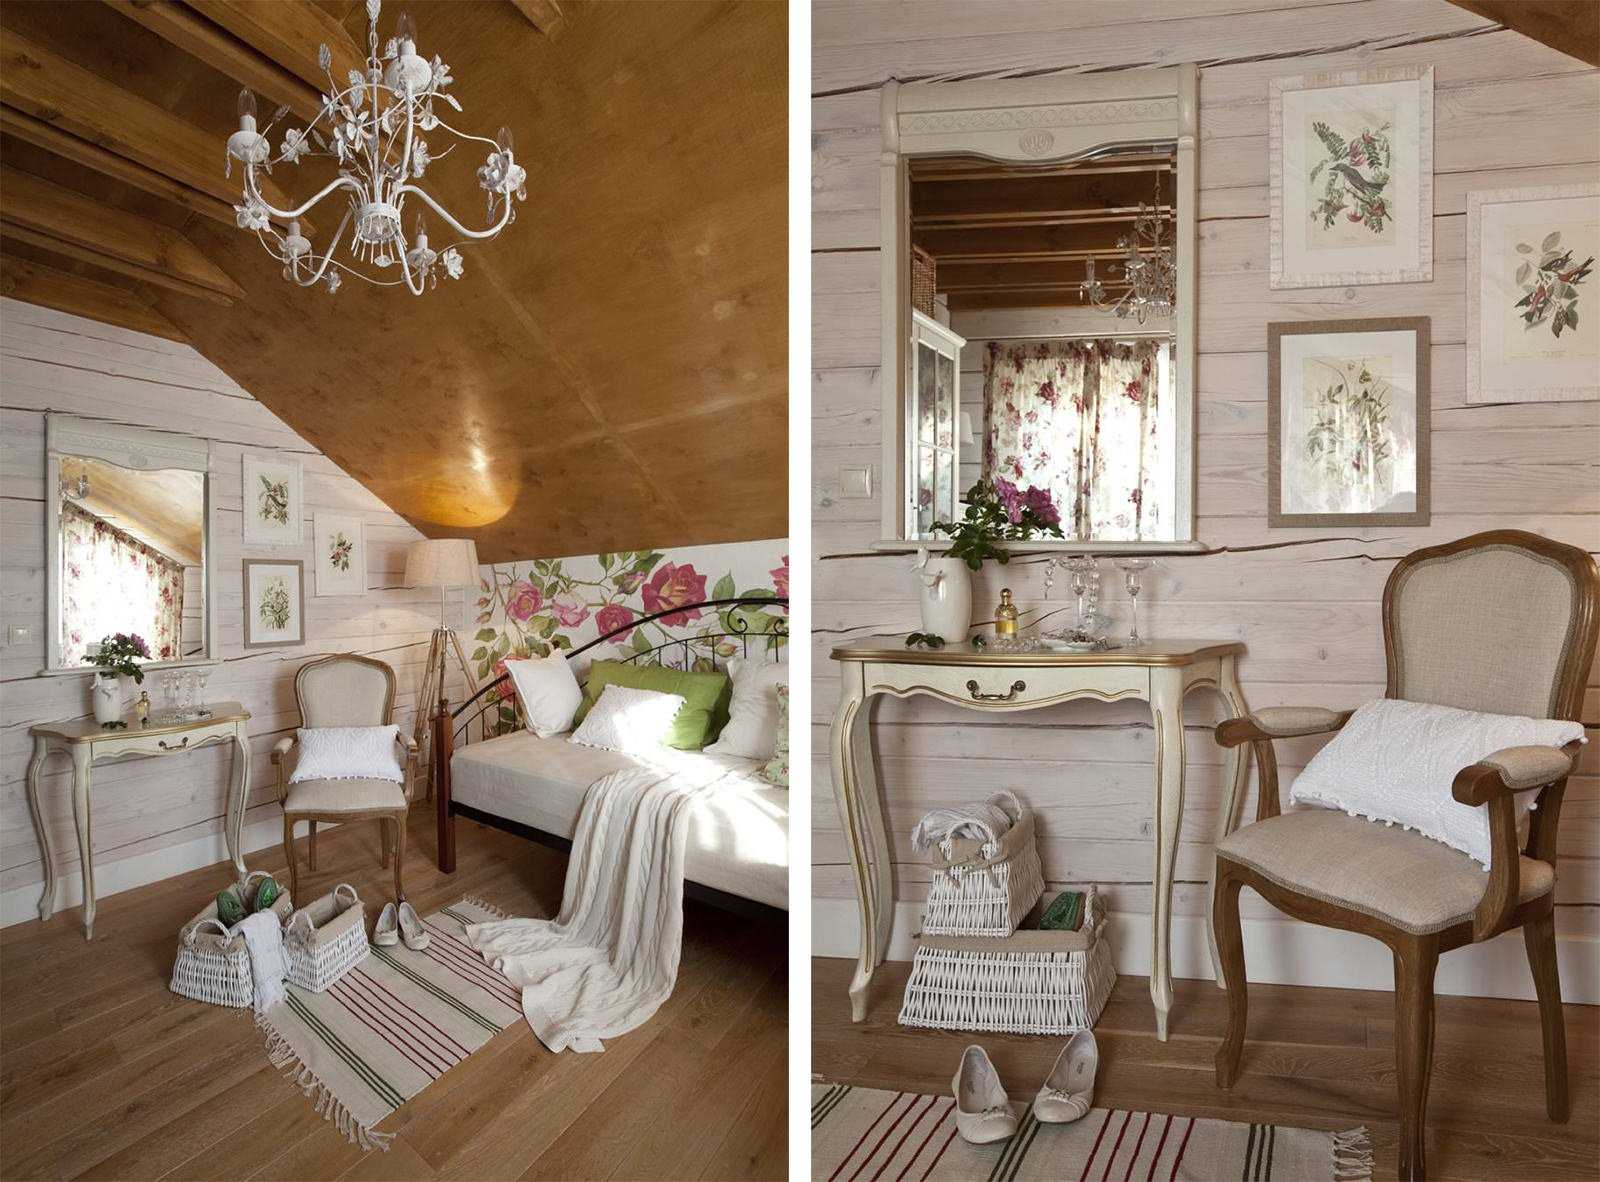 Обои в стиле прованс: правила оформления комнат (150+ фото). как сделать интерьер действительно французским?